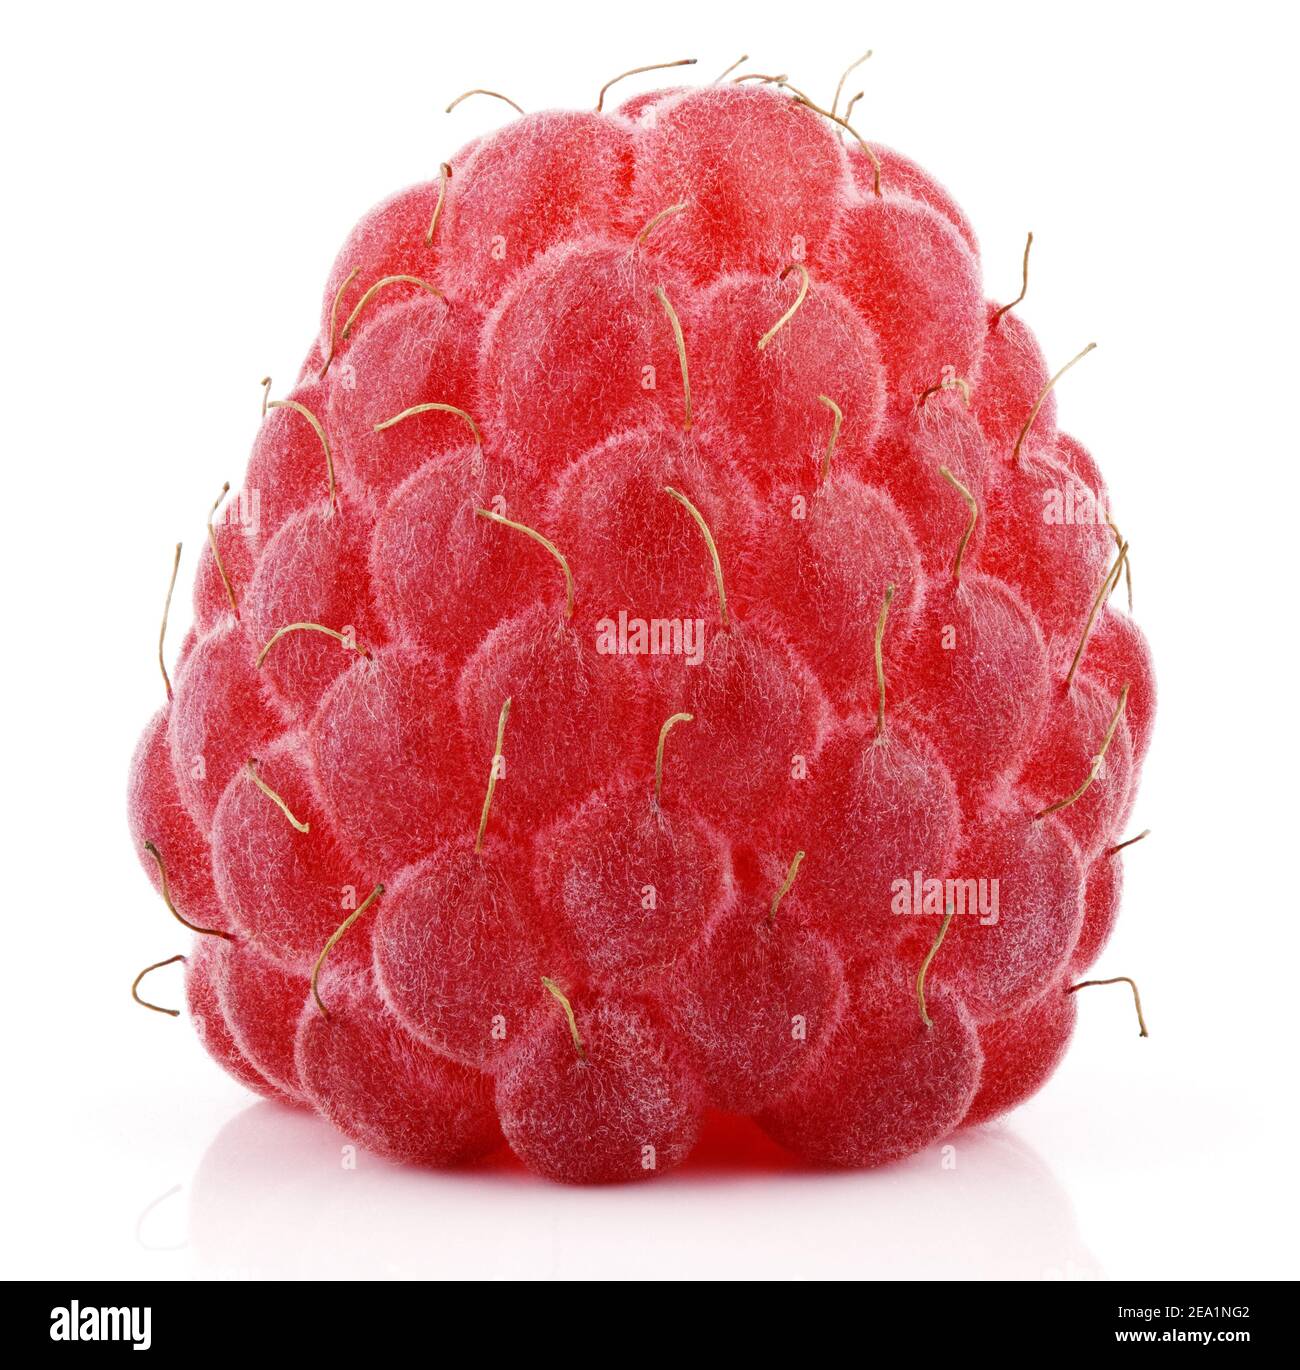 Einzelne rote Himbeer-Beerenfrucht isoliert auf weißem Hintergrund Stockfoto